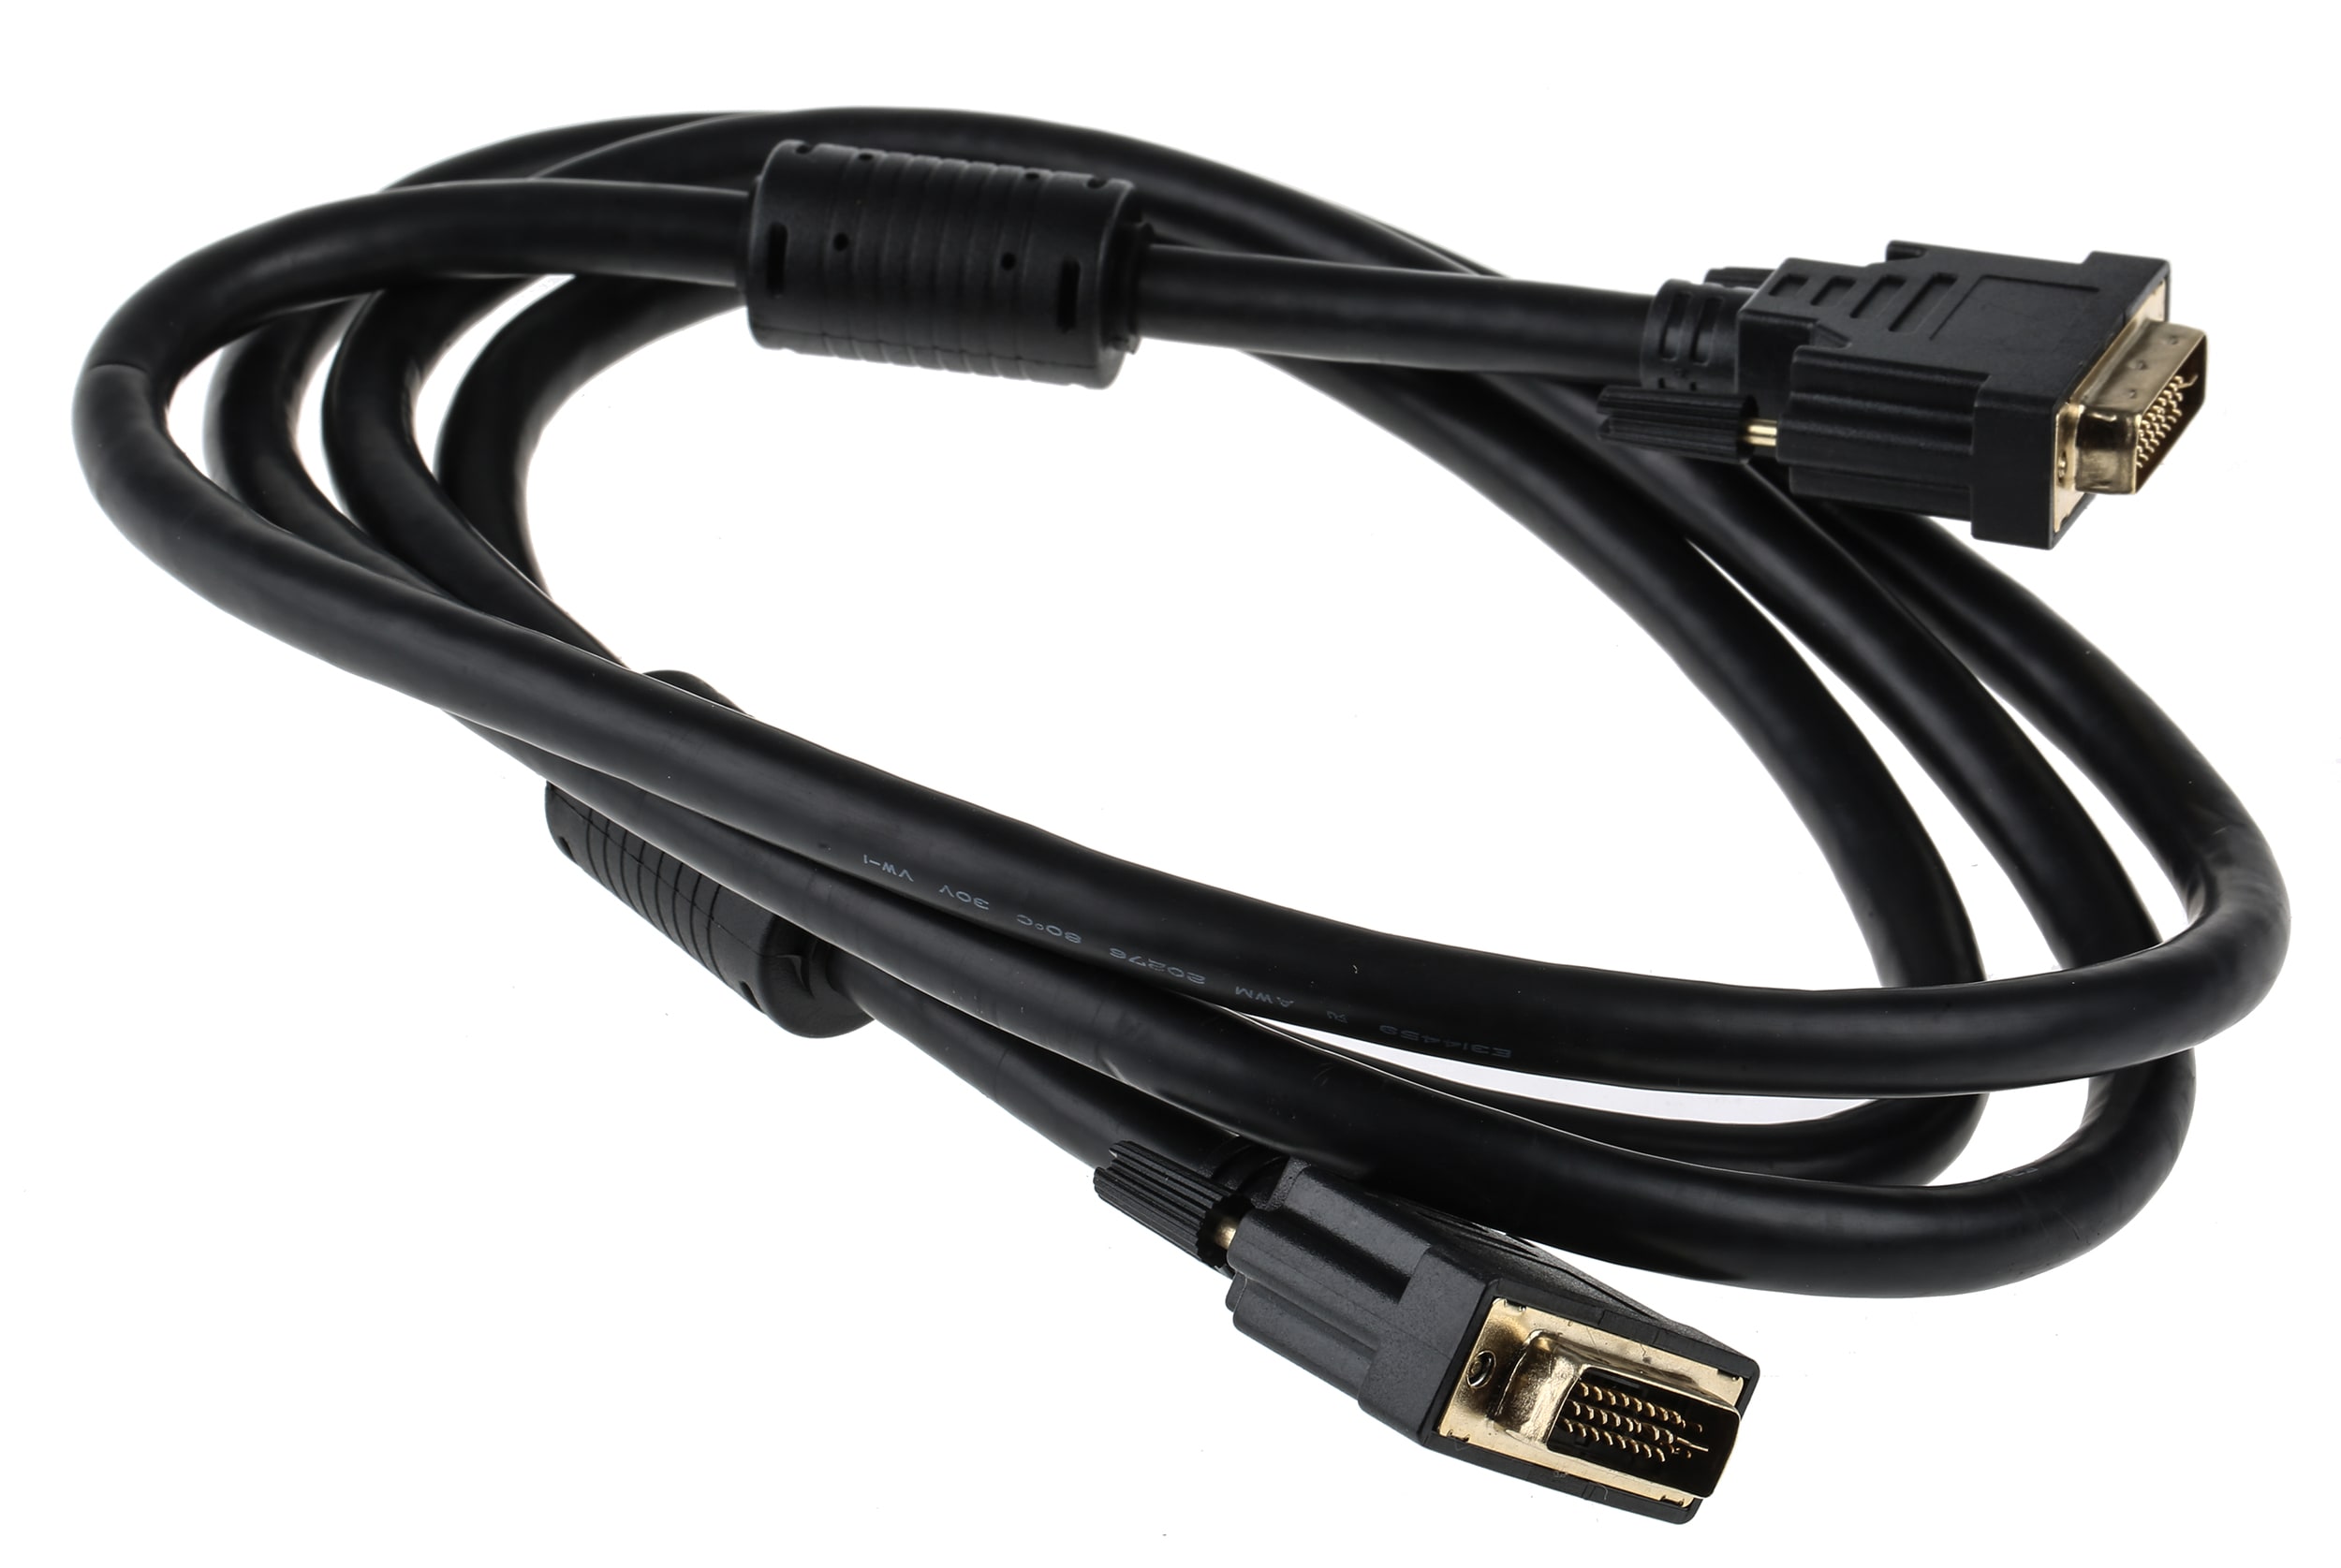 HDMI vs DVI: What's the best AV input?